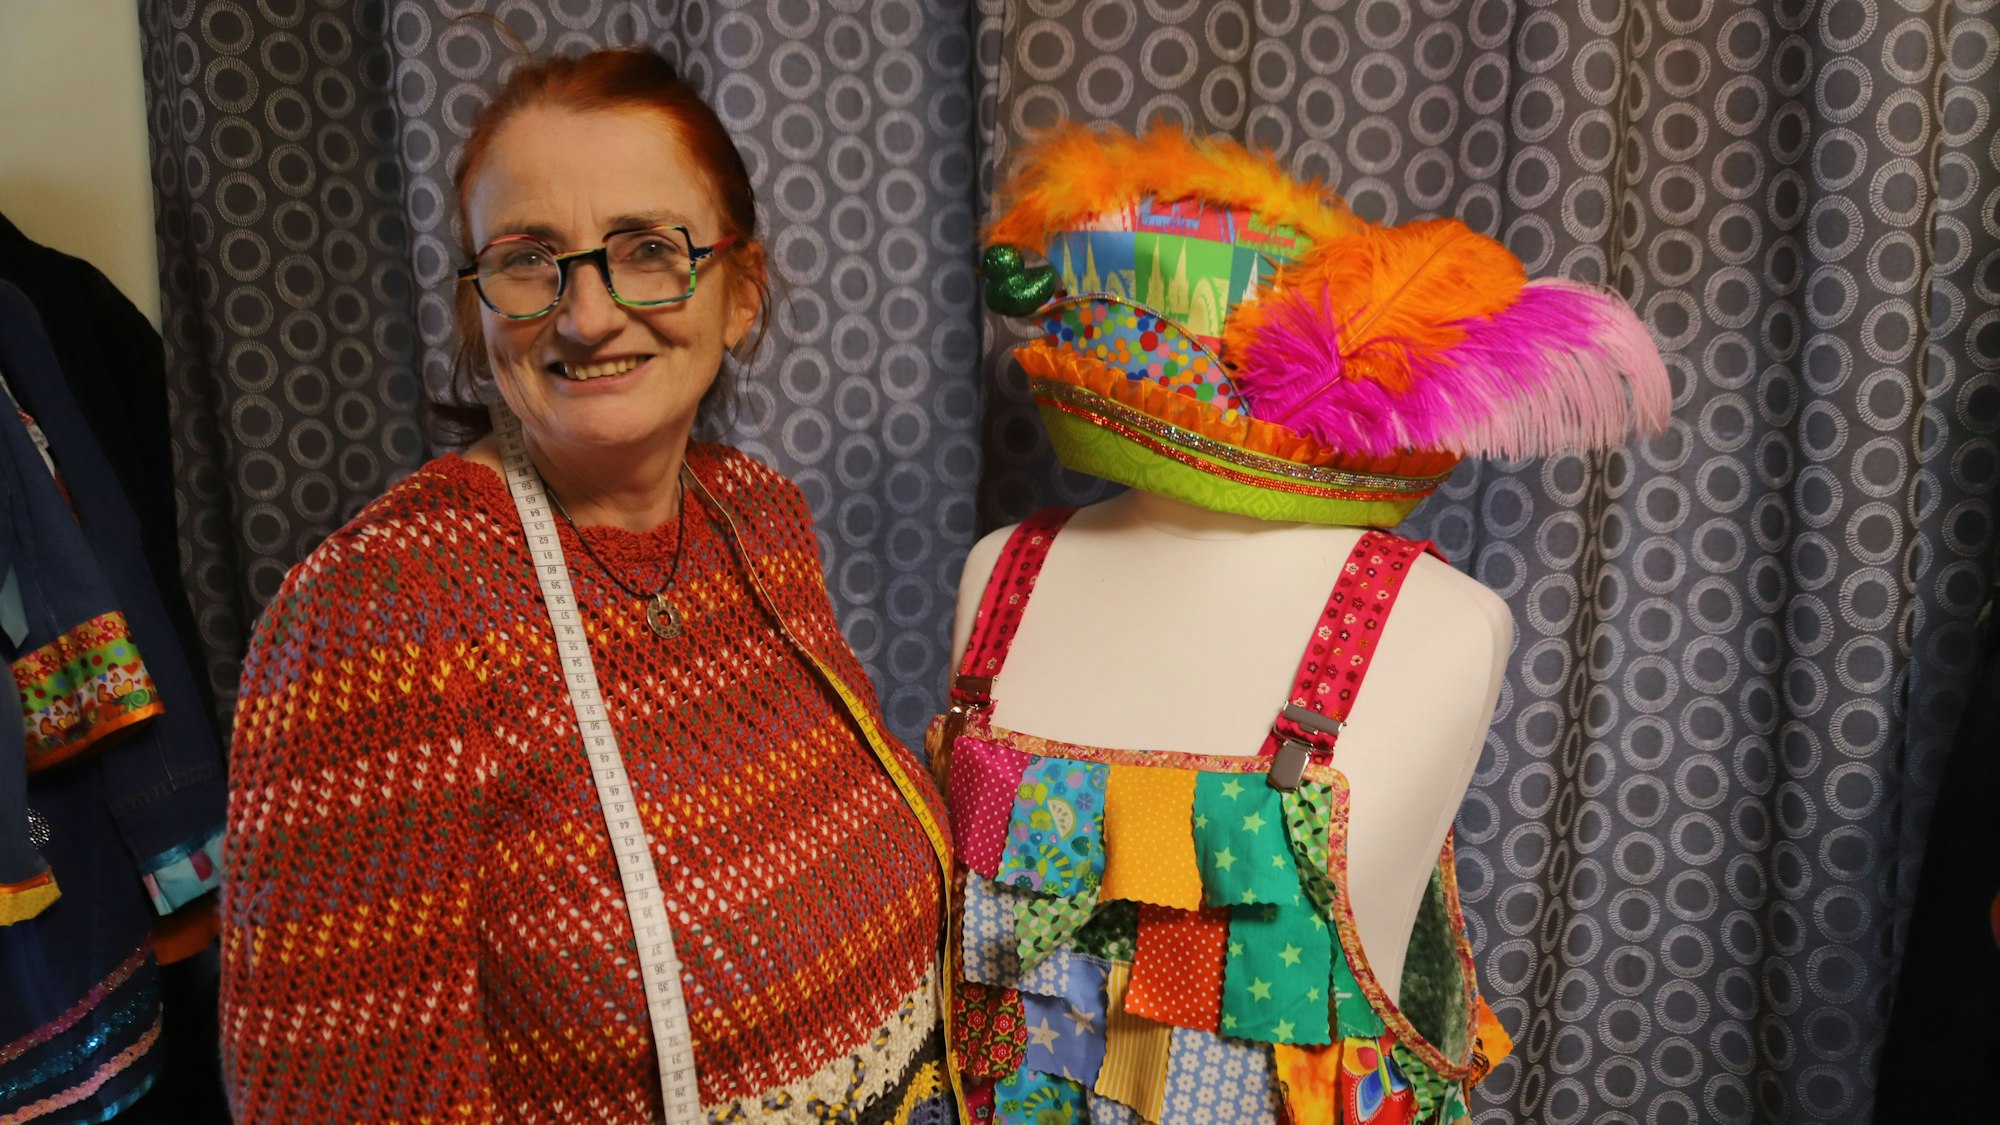 Birgit Fischer ist Förderschullehrerin und näht individuelle Karnevalskostüme. Ihr Label heißt Lieblingskostüm.